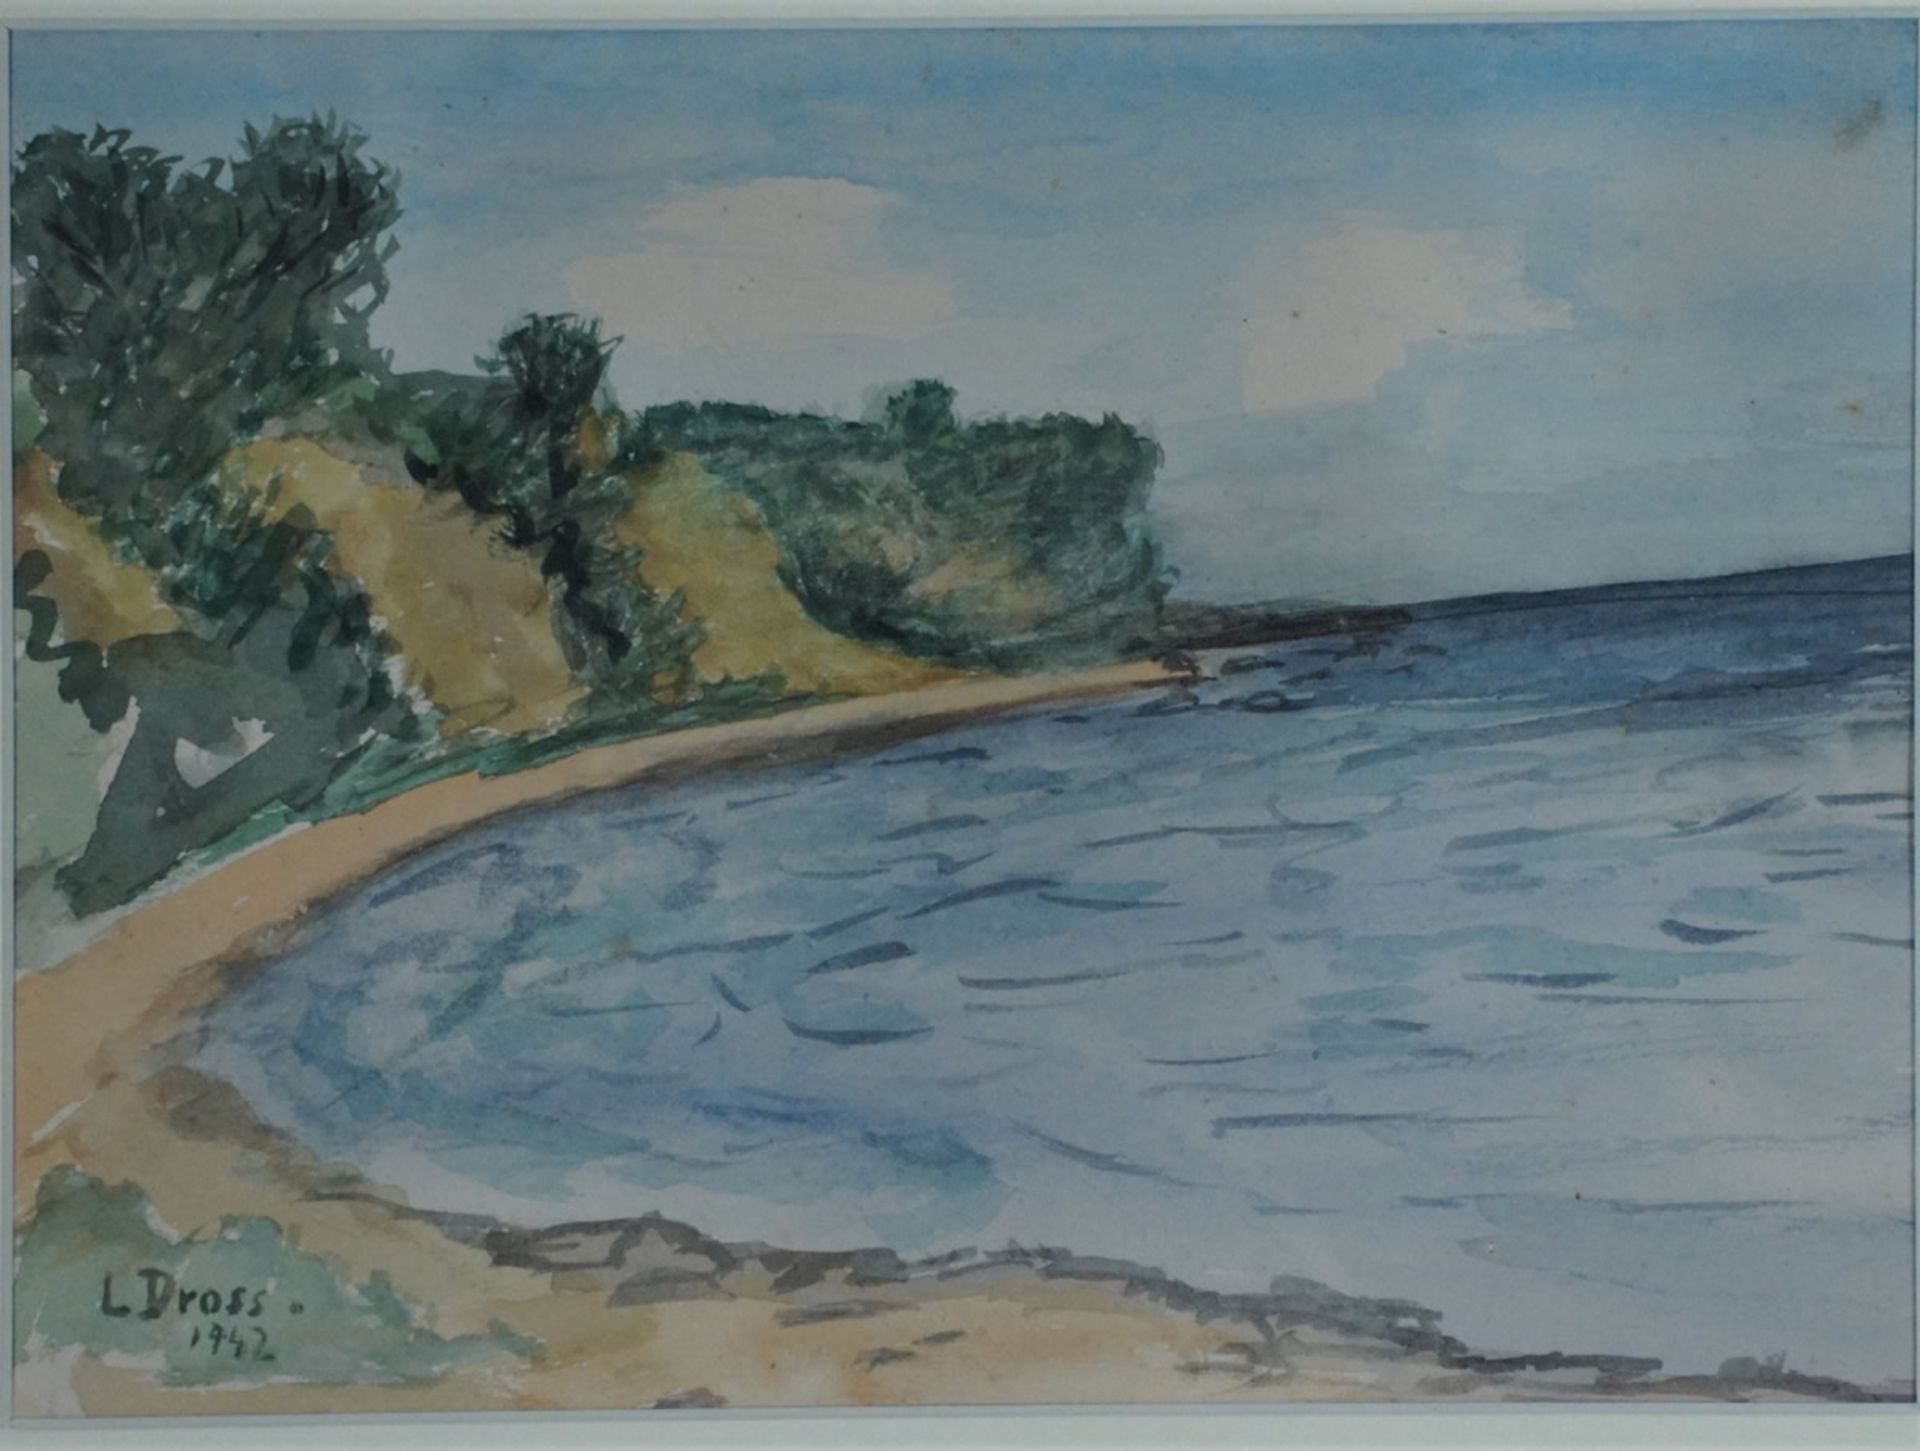 Dross, Lieselotte, Steilküste, 1942, Aquarell, 18 x 25, sign.